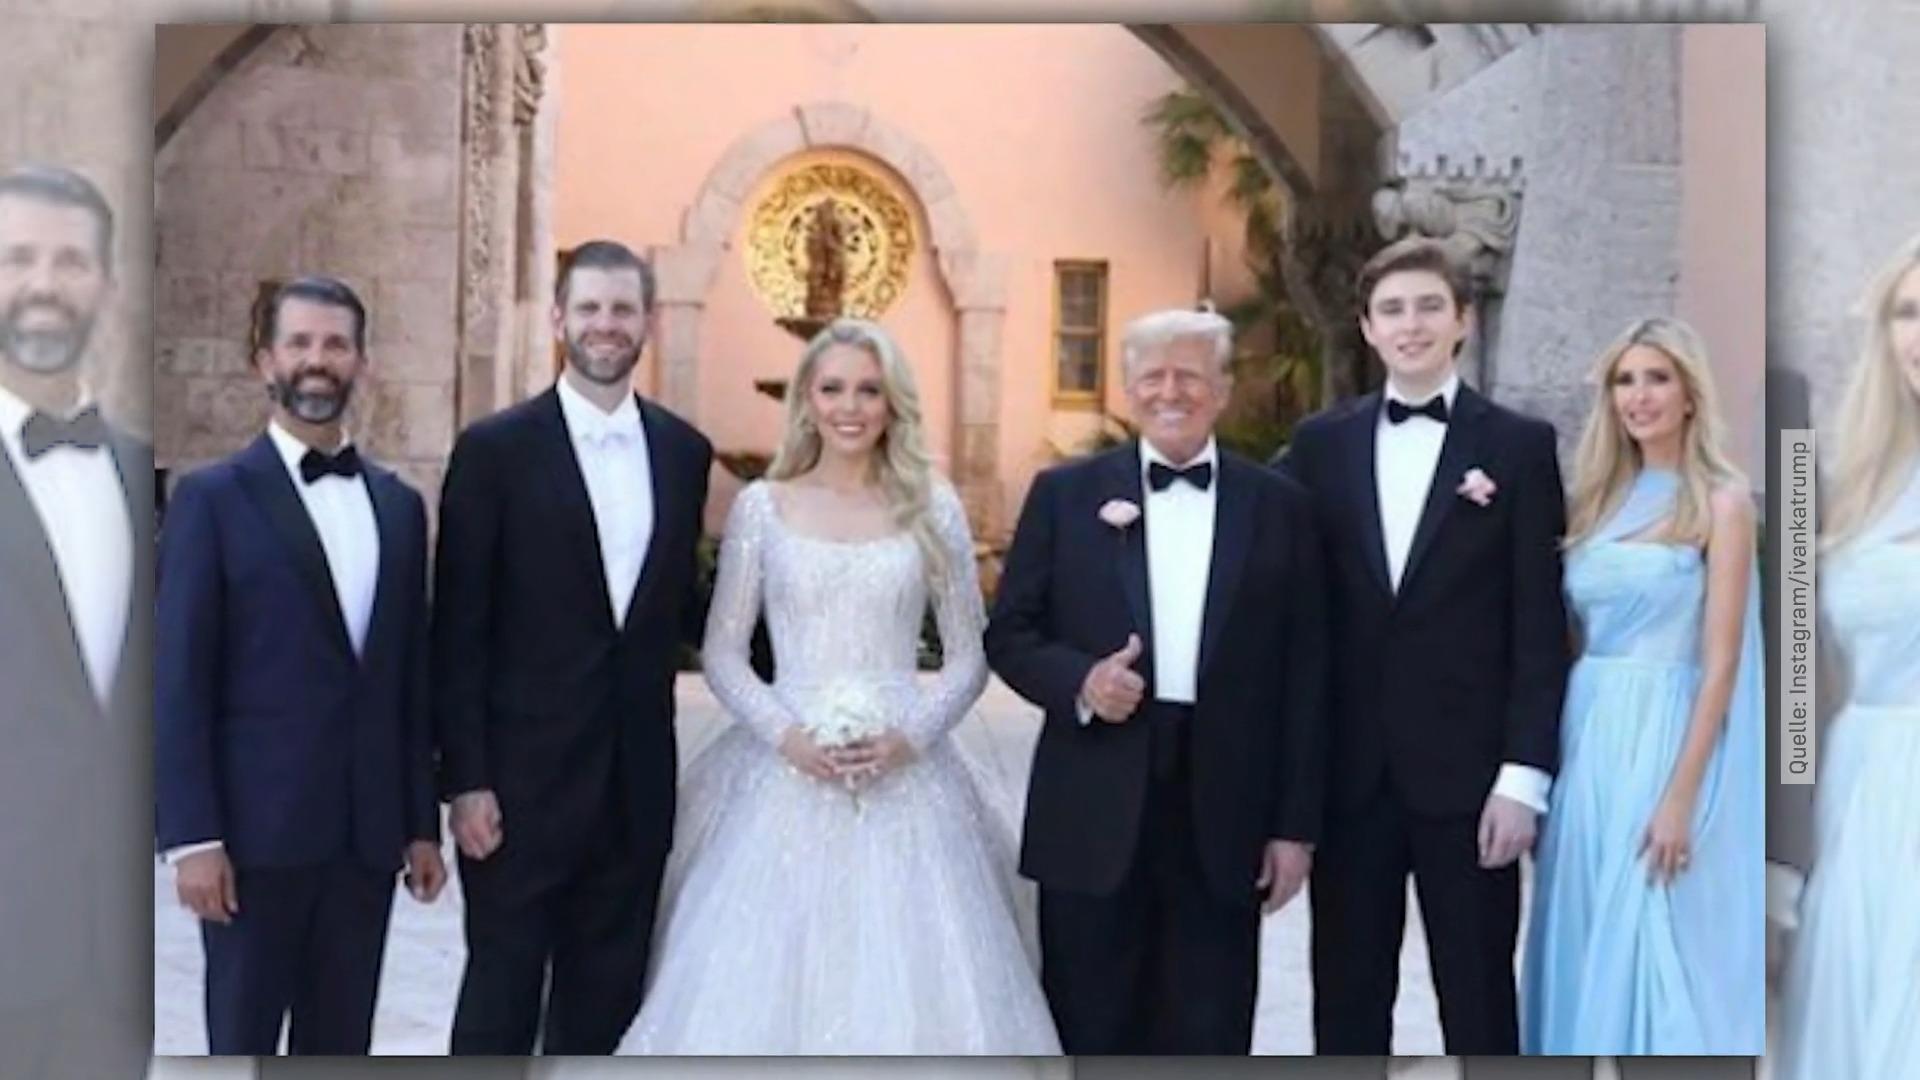 Donald Trump führt seine Tochter zum Traualtar Private Einblicke in Hochzeit von Tiffany Trump